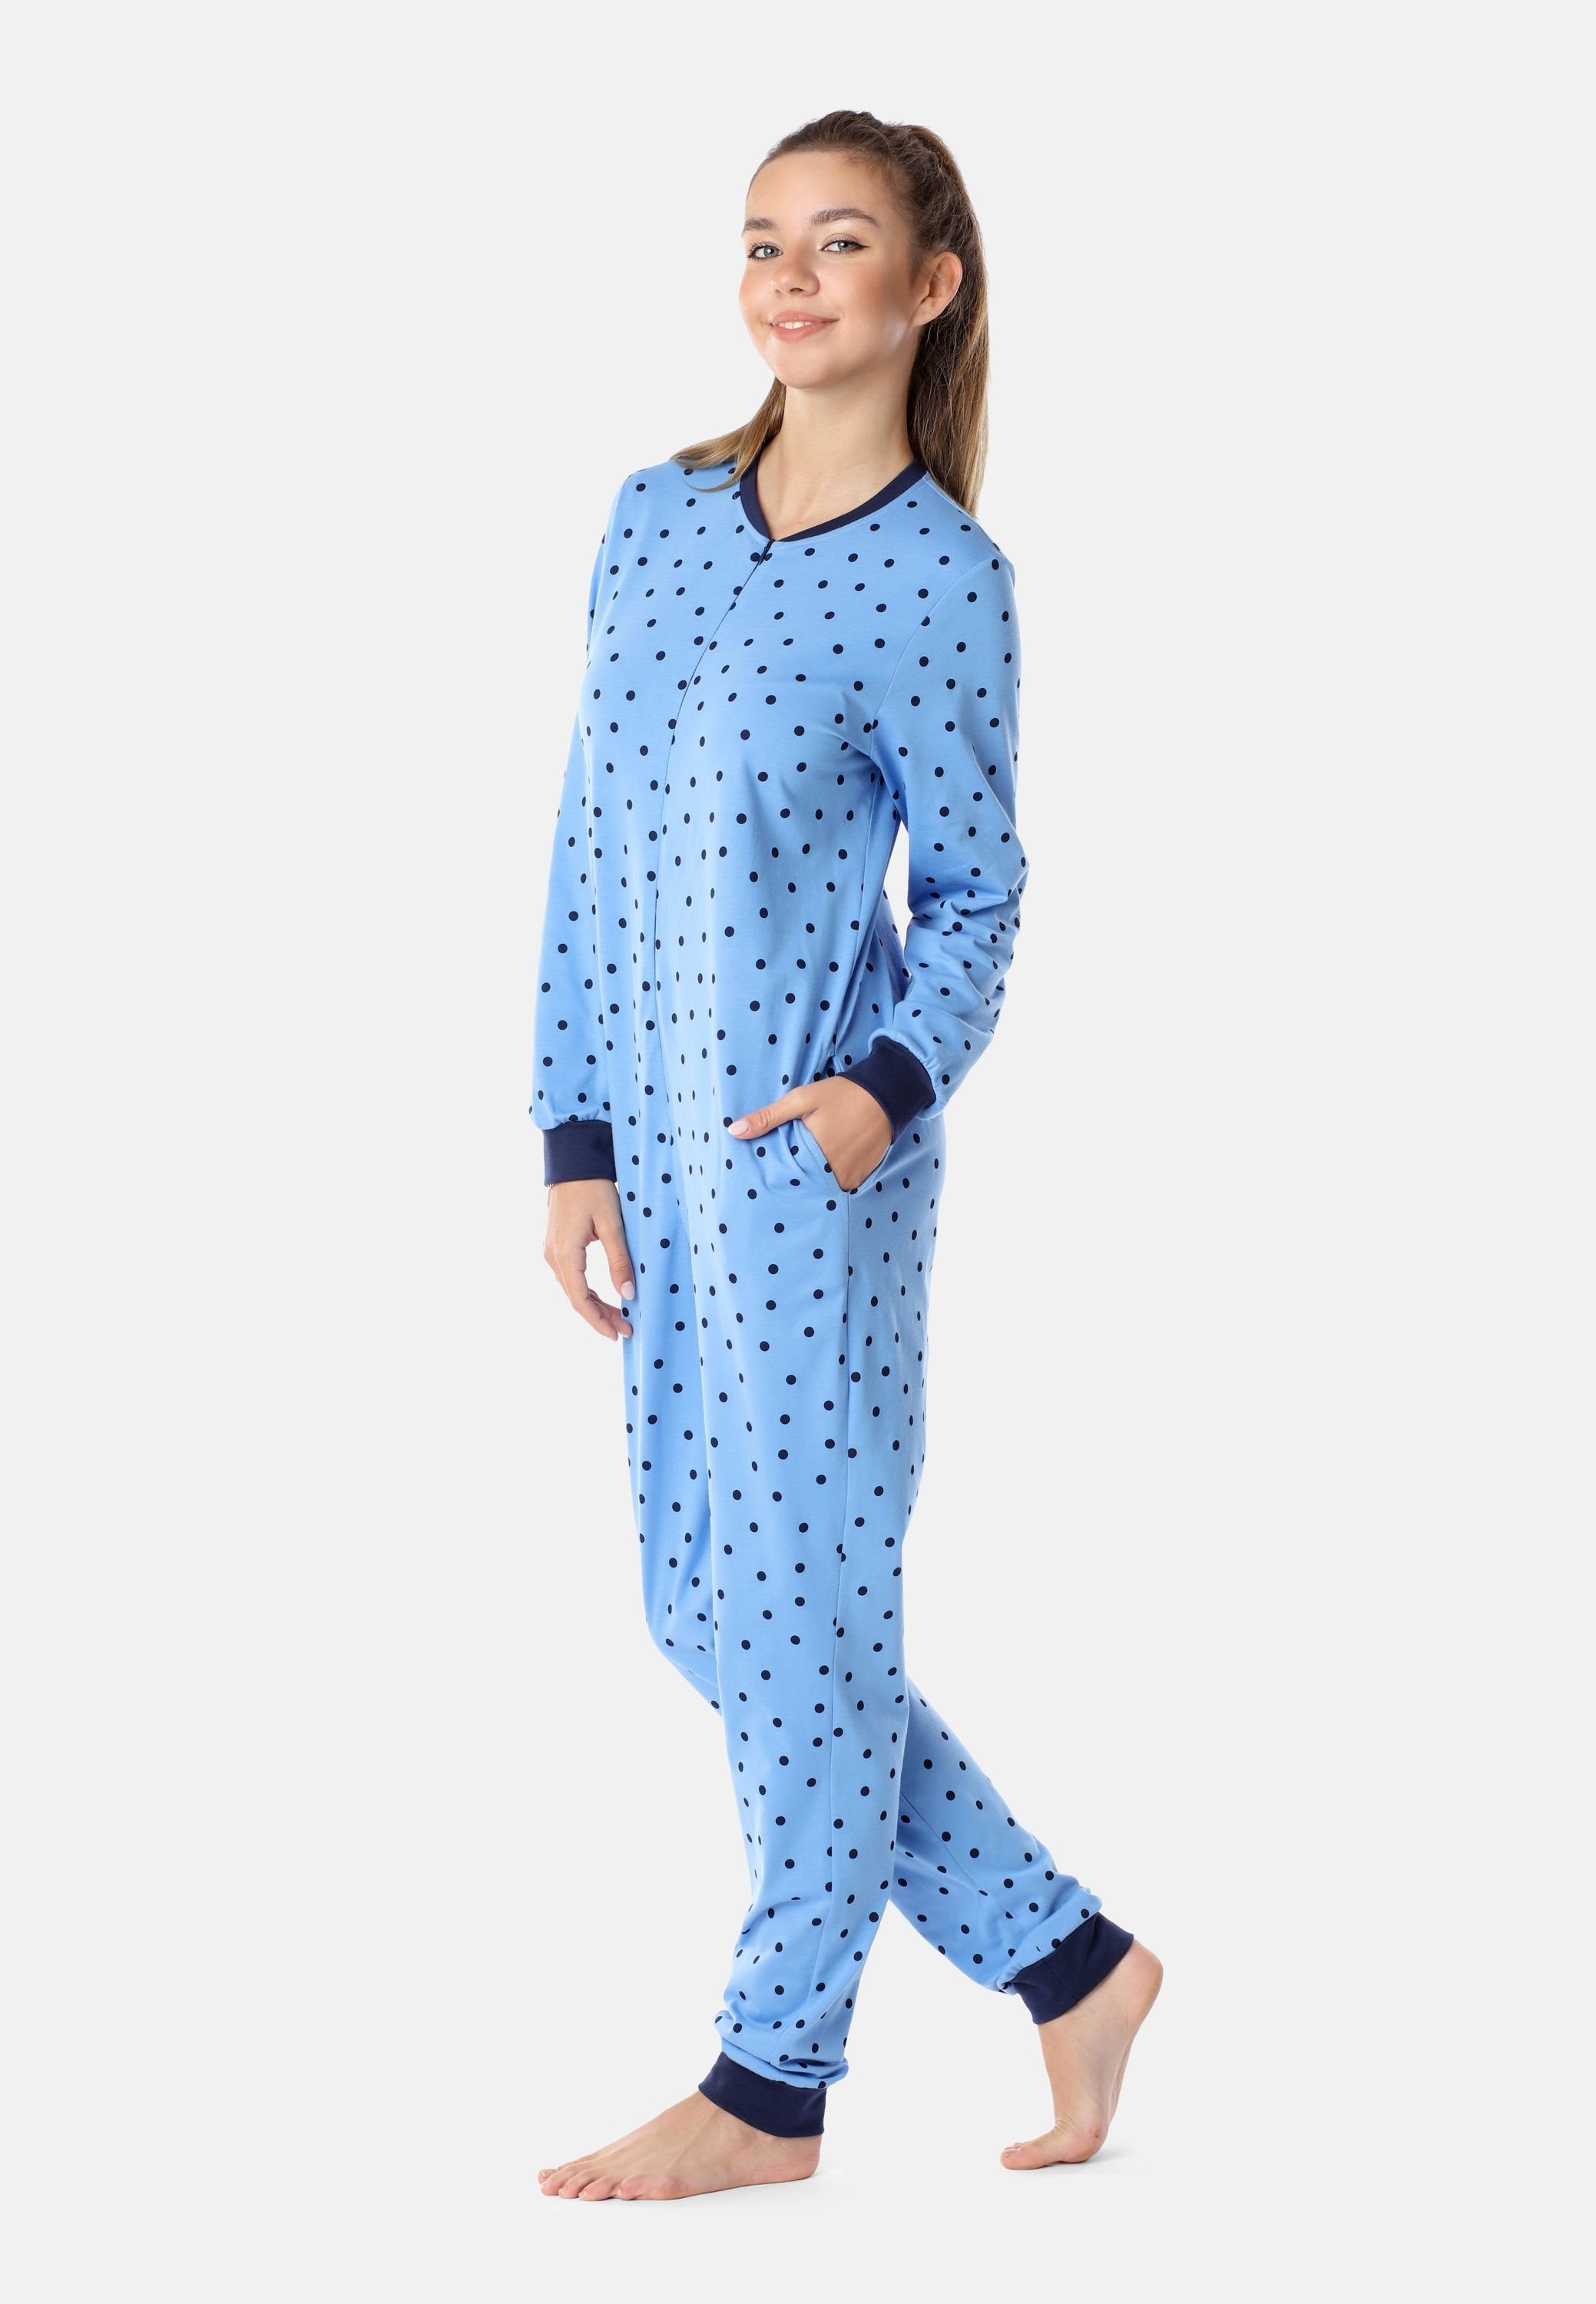 Merry Style Schlafanzug Mädchen Schlafanzug Schlafoverall Jugend MS10-235 Blaue/Punkte